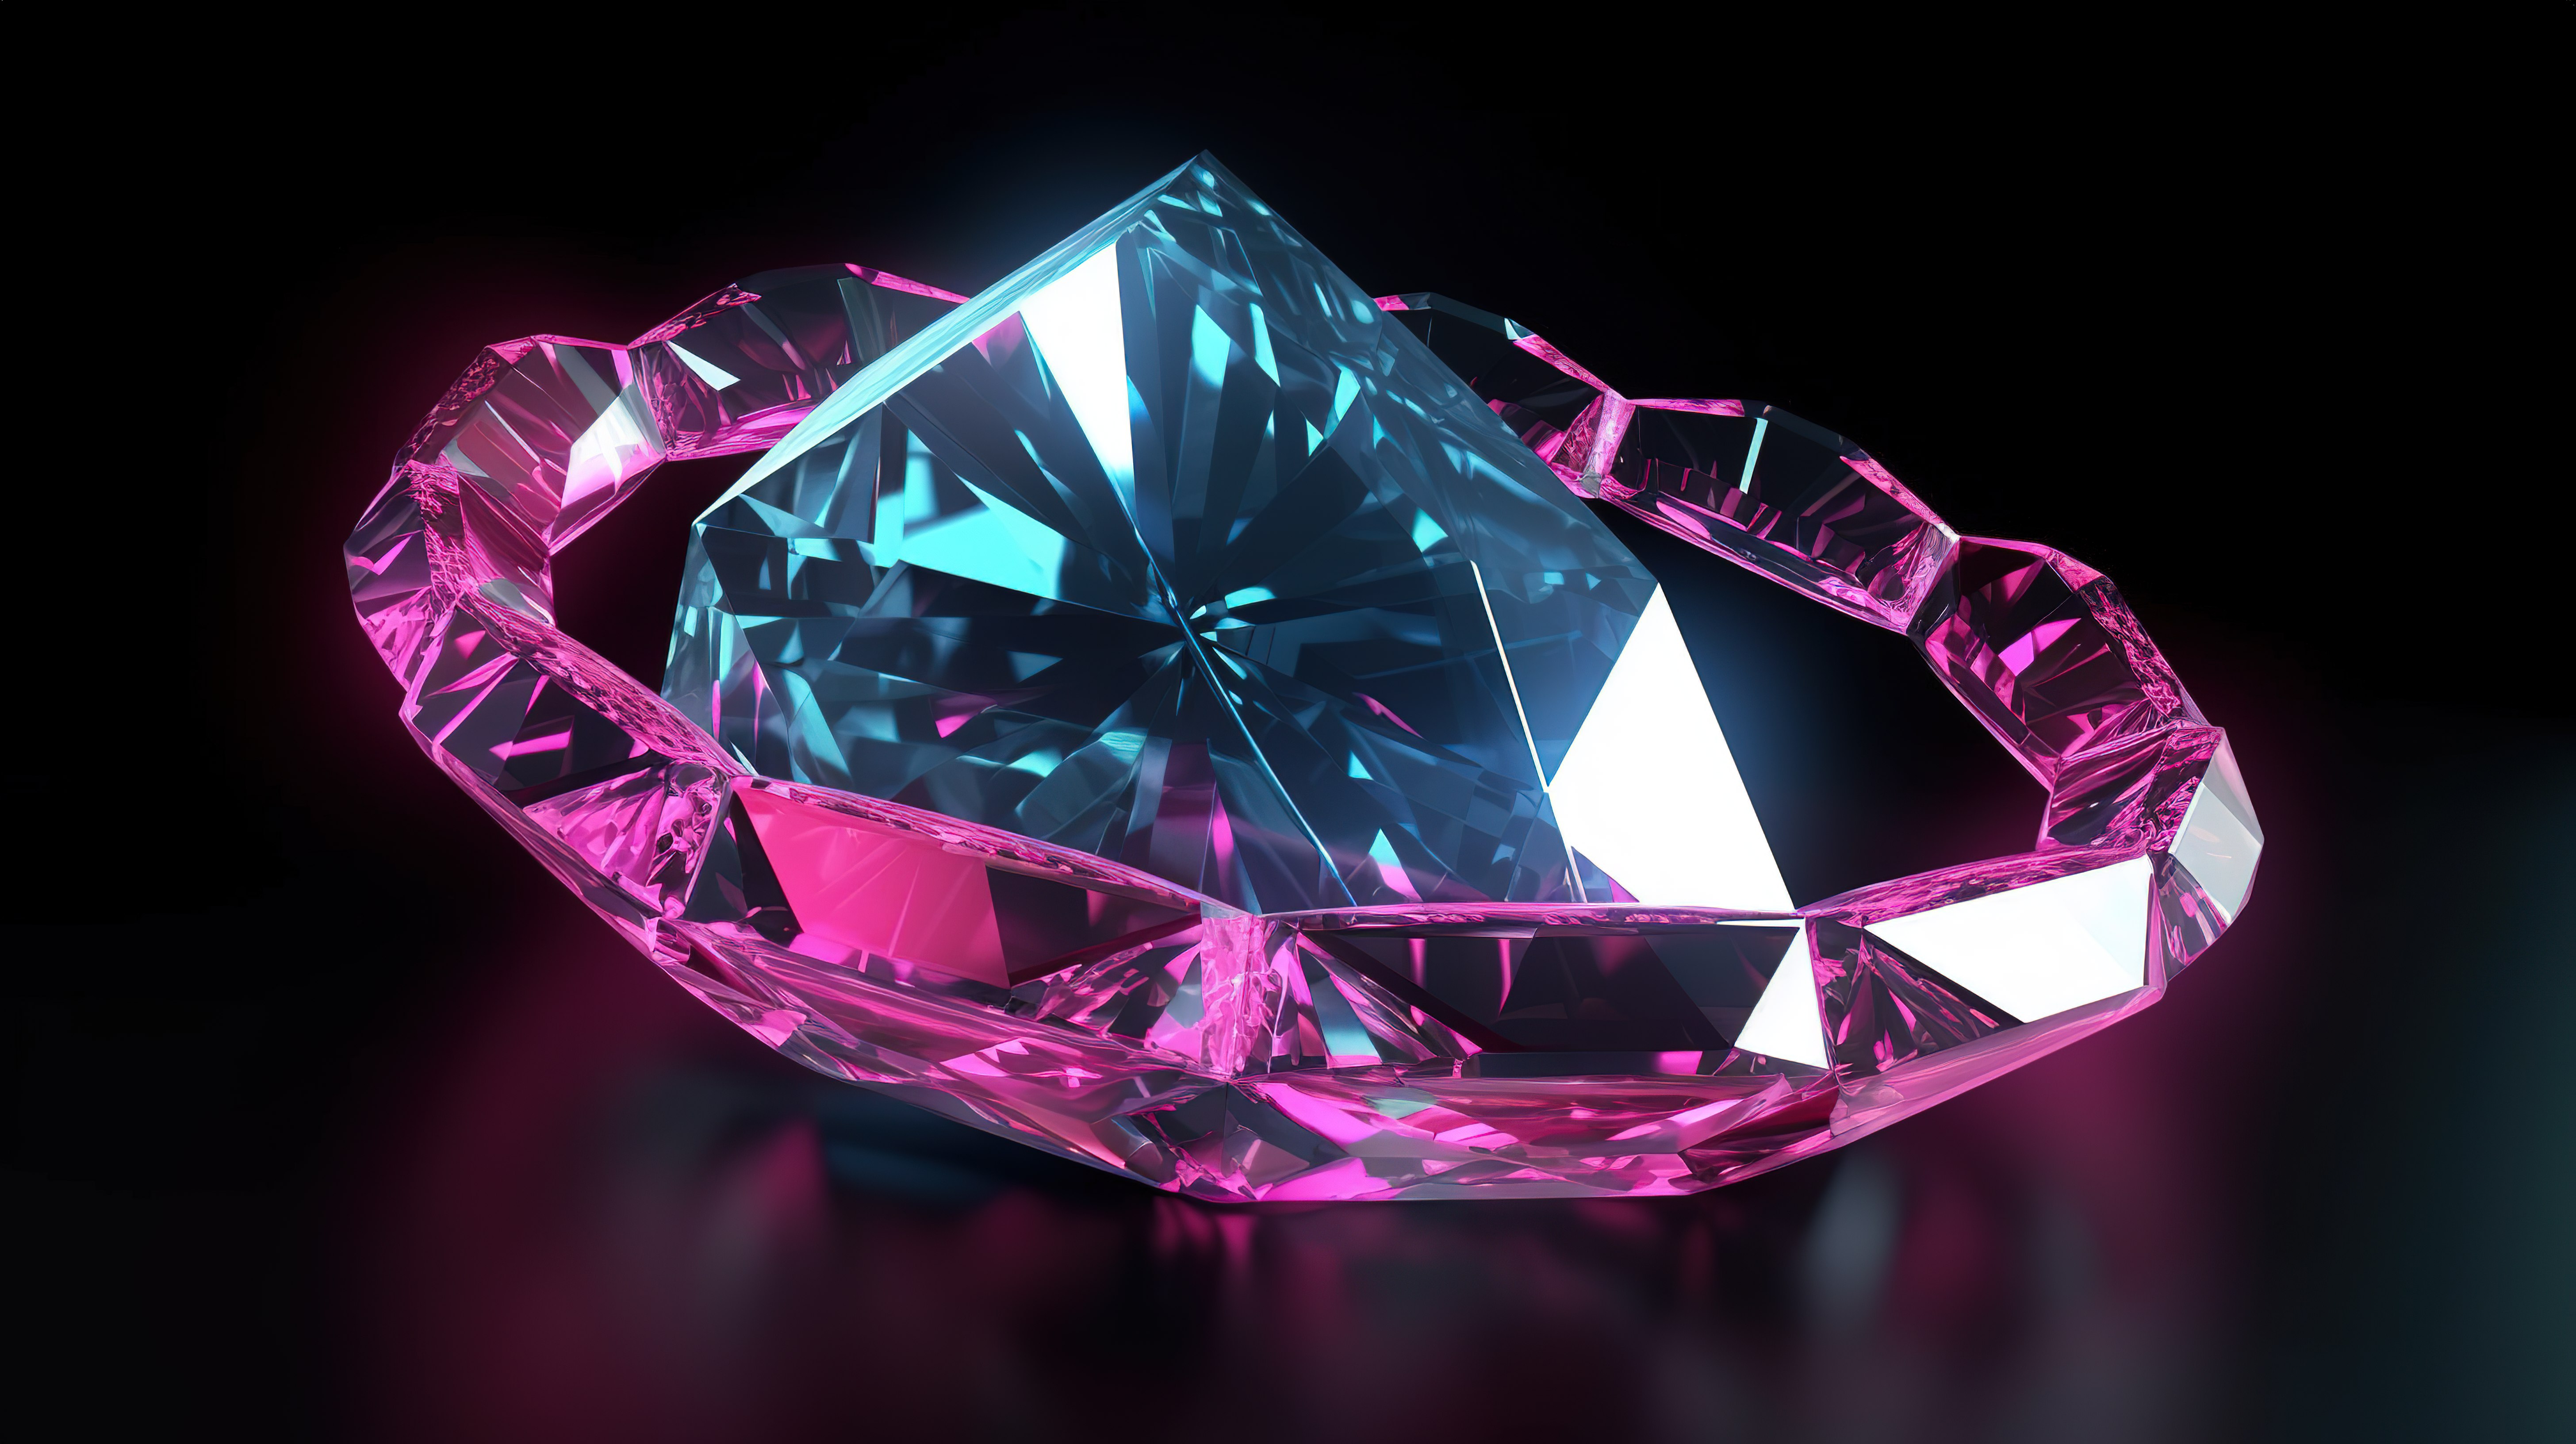 深色背景被 3D 渲染中的辐射粉色和蓝色 LED 钻石照亮图片